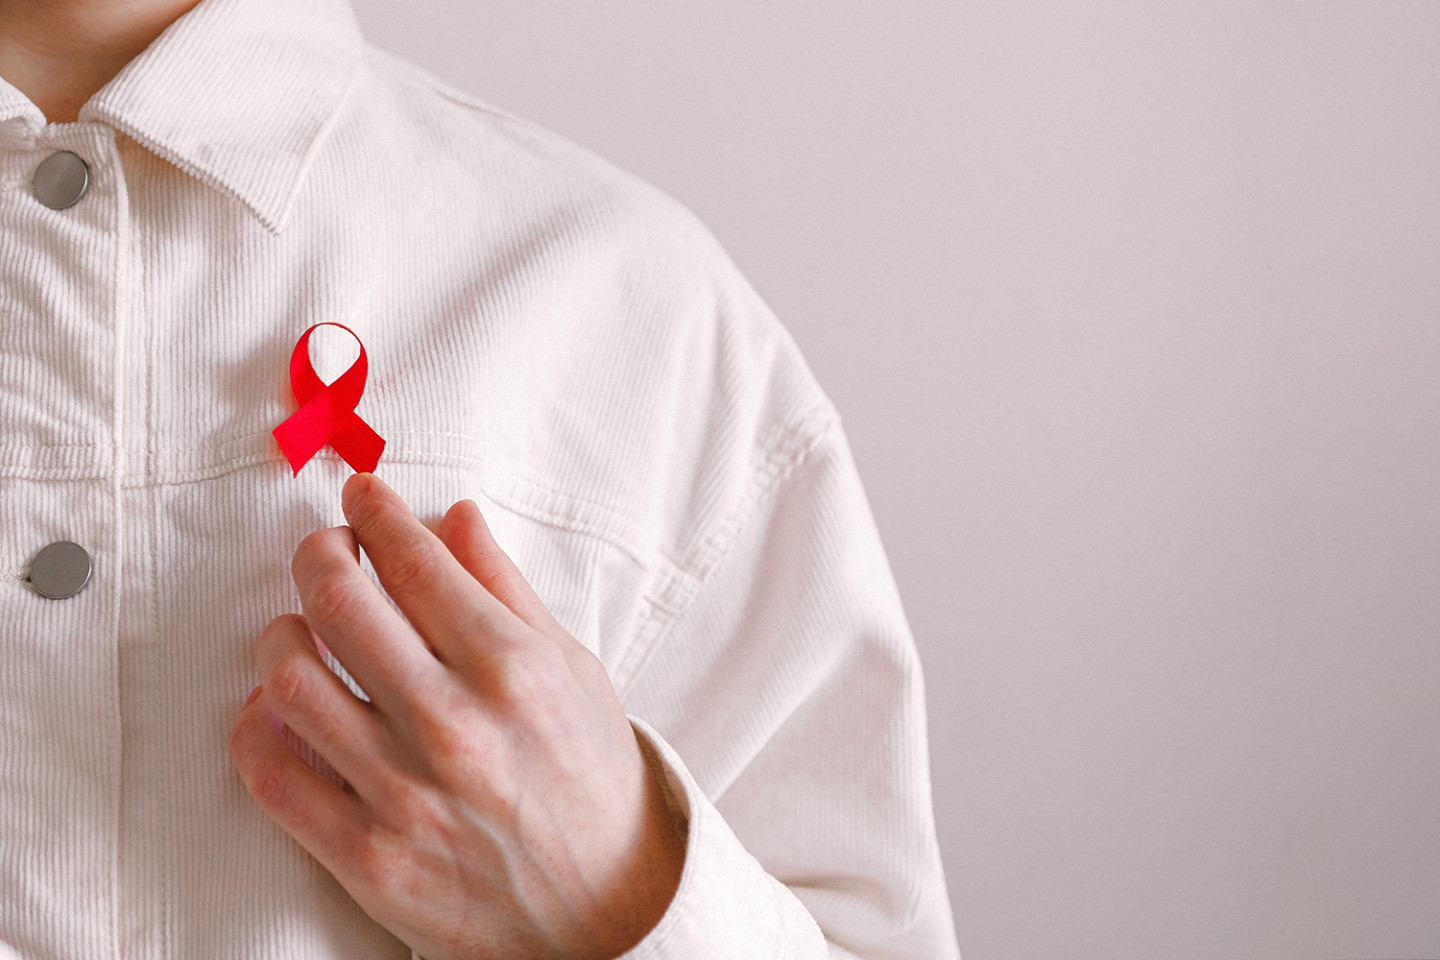 Красная лента — символ солидарности с ВИЧ-инфицированными людьми
 